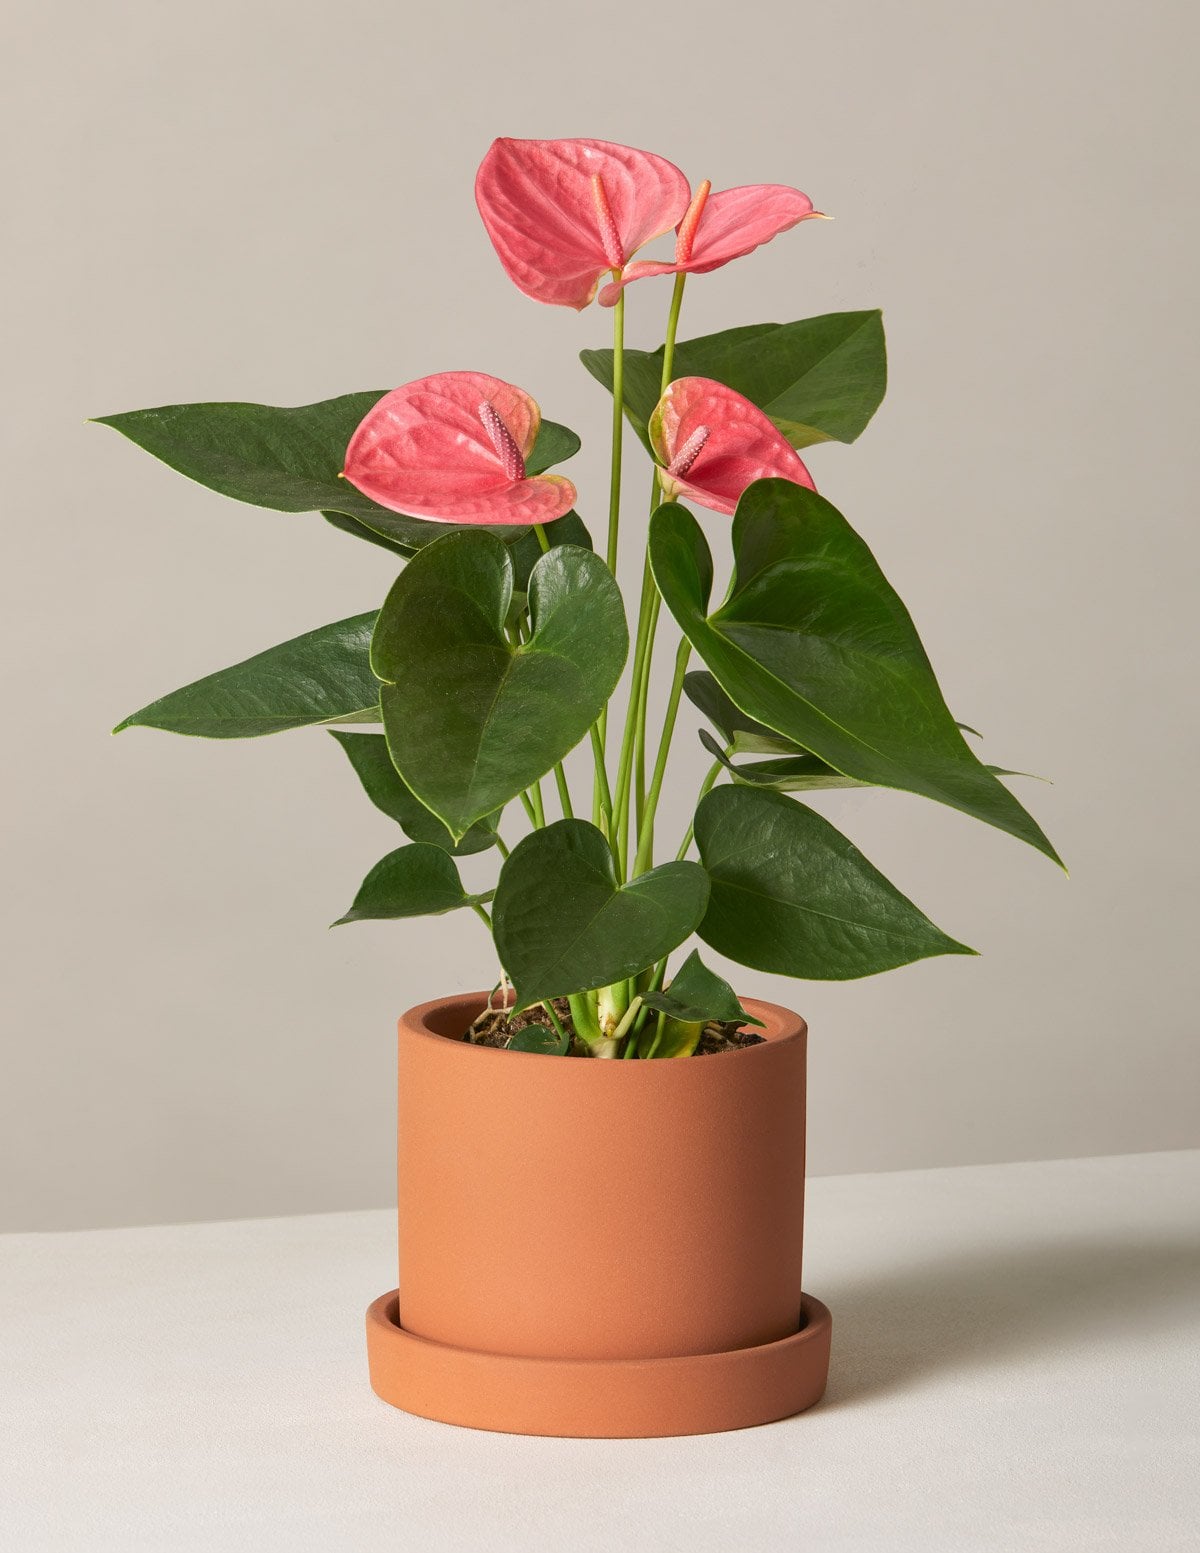 Best Indoor Flower Plants For Beginners